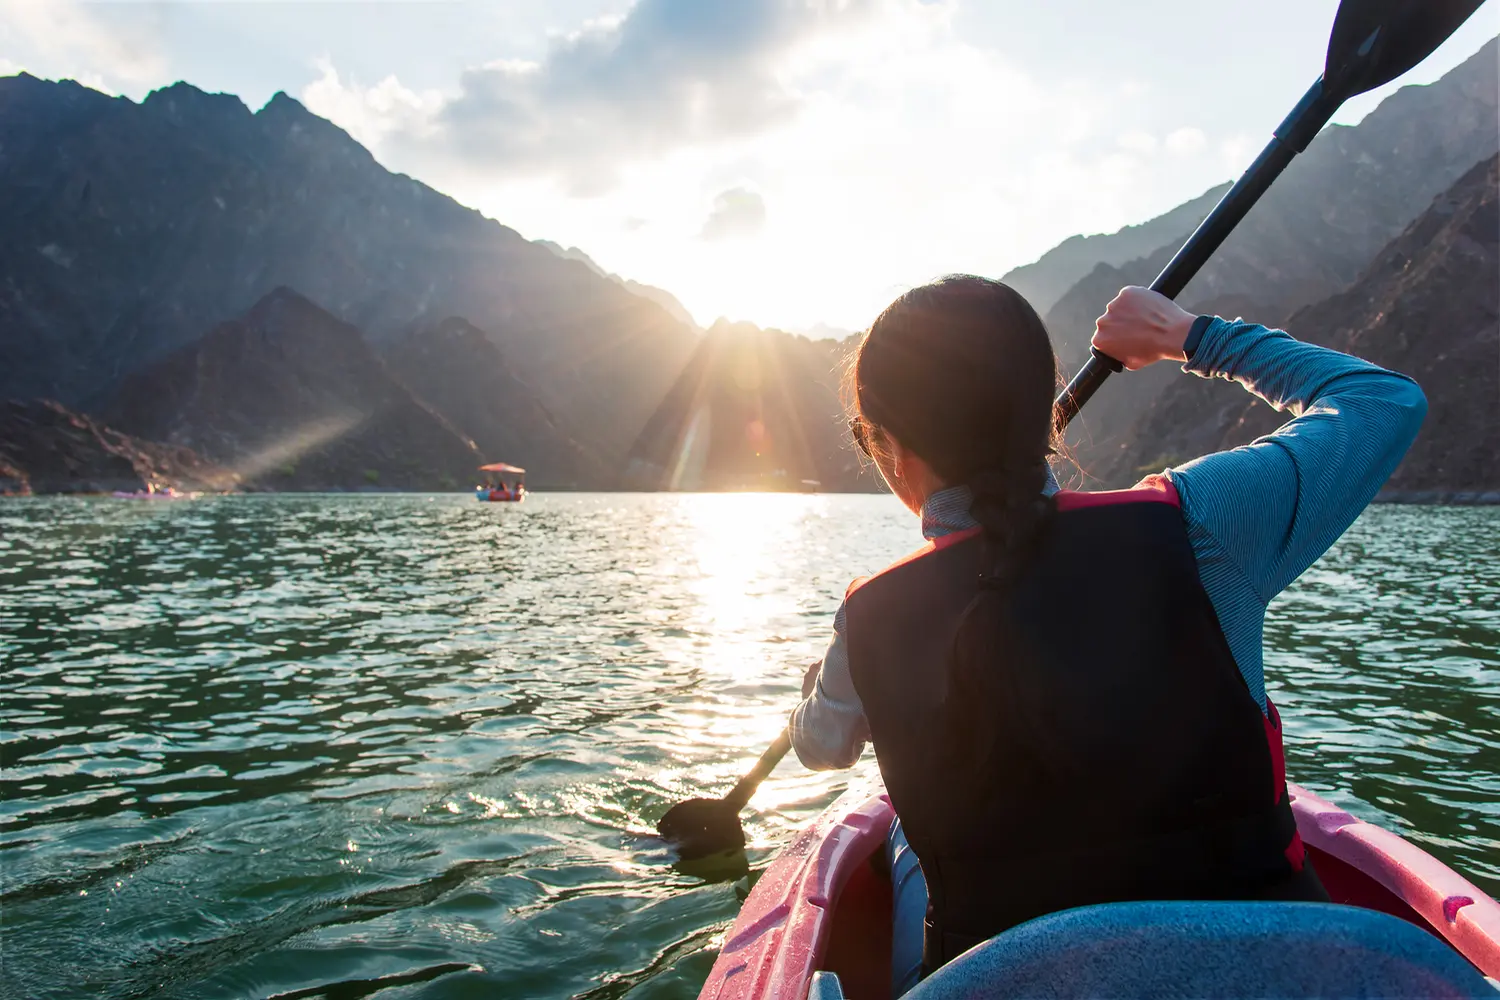 Woman kayaking in Hatta lake in Dubai at sunset